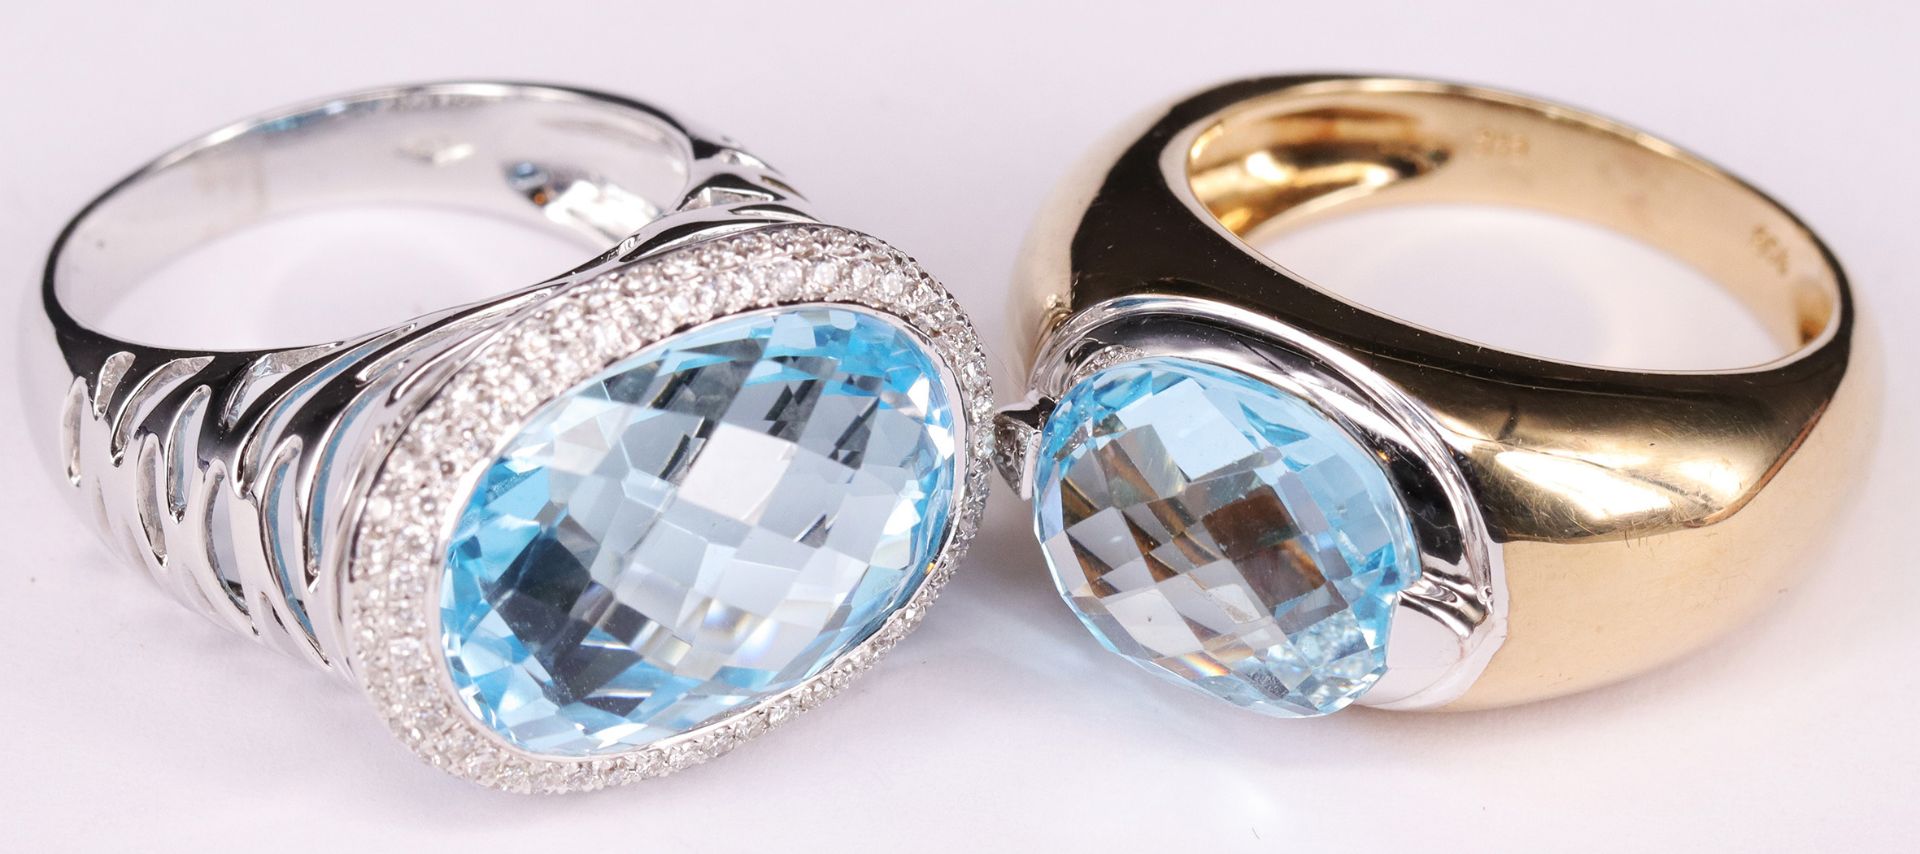 Zwei Damenringe mit hellblauem Topas: breiter Ring mit großem Stein und kleinen Brillianten, 750er